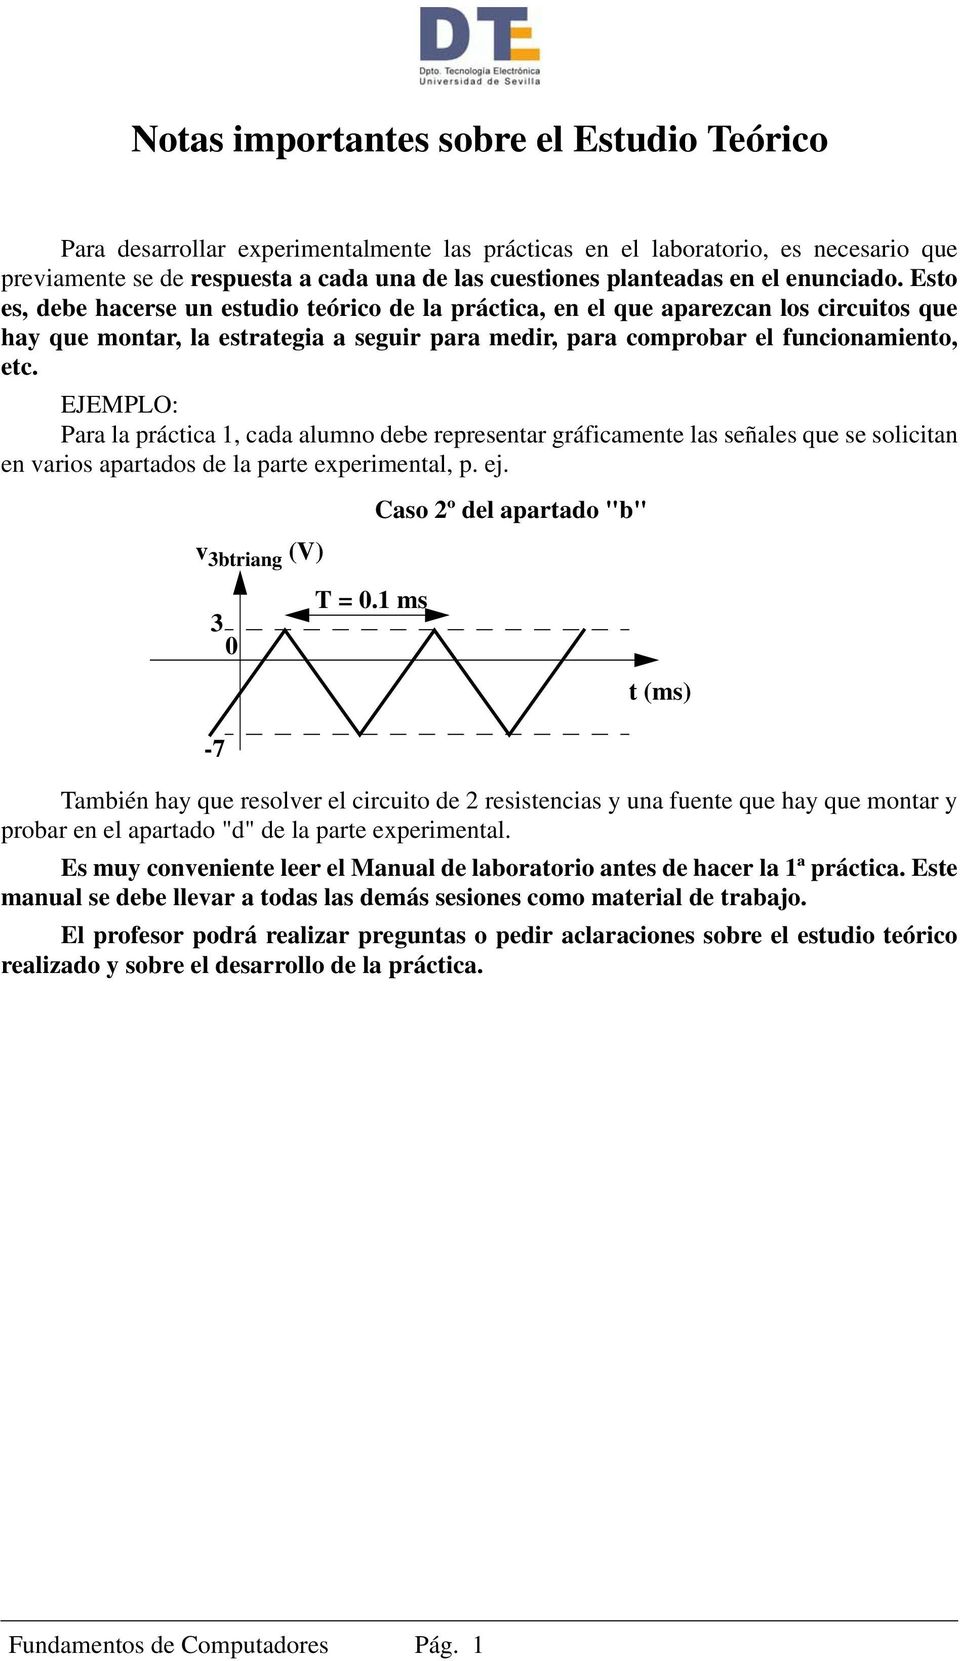 EJEMPLO: Para la práctica 1, cada alumno debe representar gráficamente las señales que se solicitan en varios apartados de la parte experimental, p. ej.